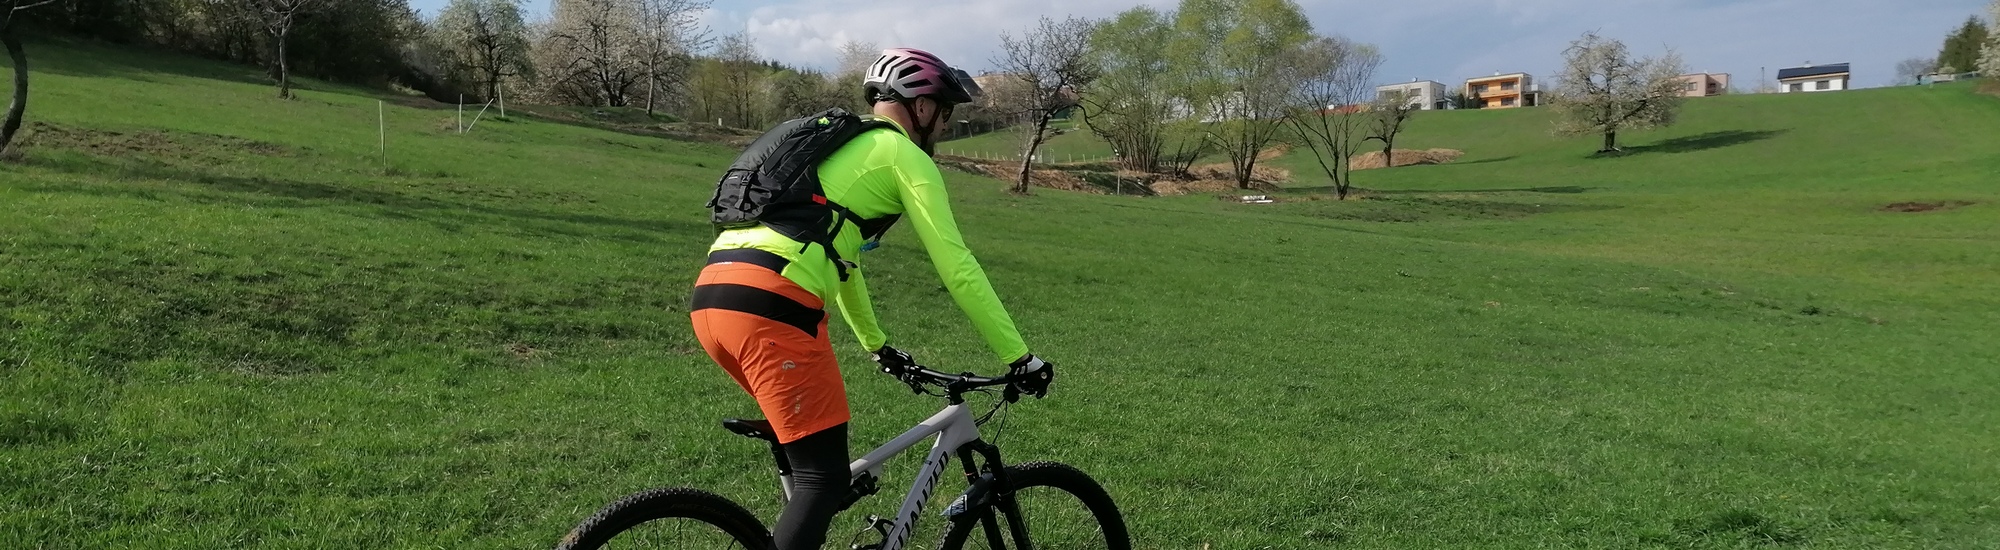 Test: Batoh Thule Bike Rail Hydration 12L - nečakaj žiadne kompromisy 